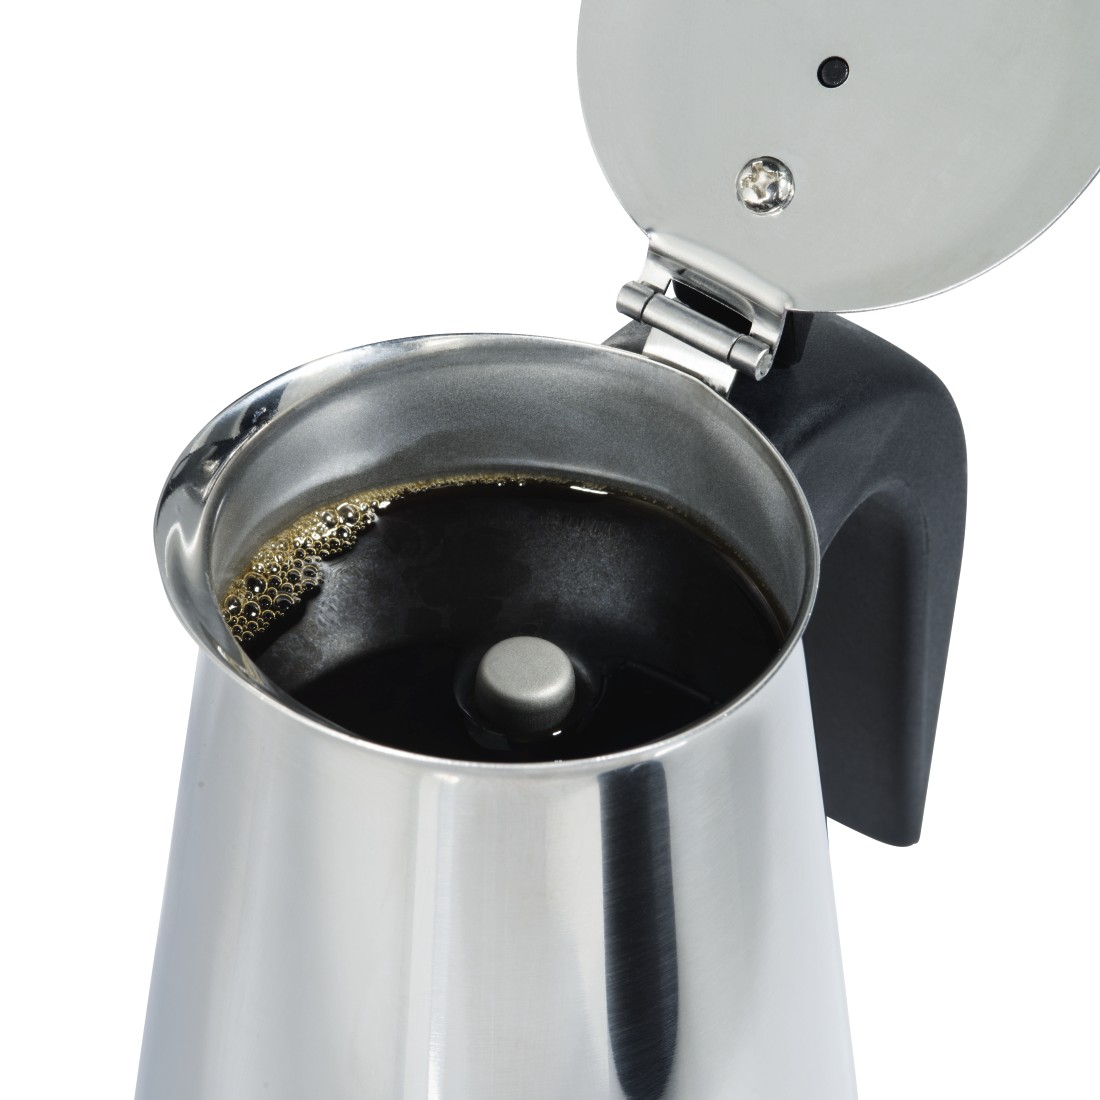 dex8 Druckfähiges Detail 8 - Xavax, Espressokocher aus Edelstahl, 250 ml, geeignet für Induktion